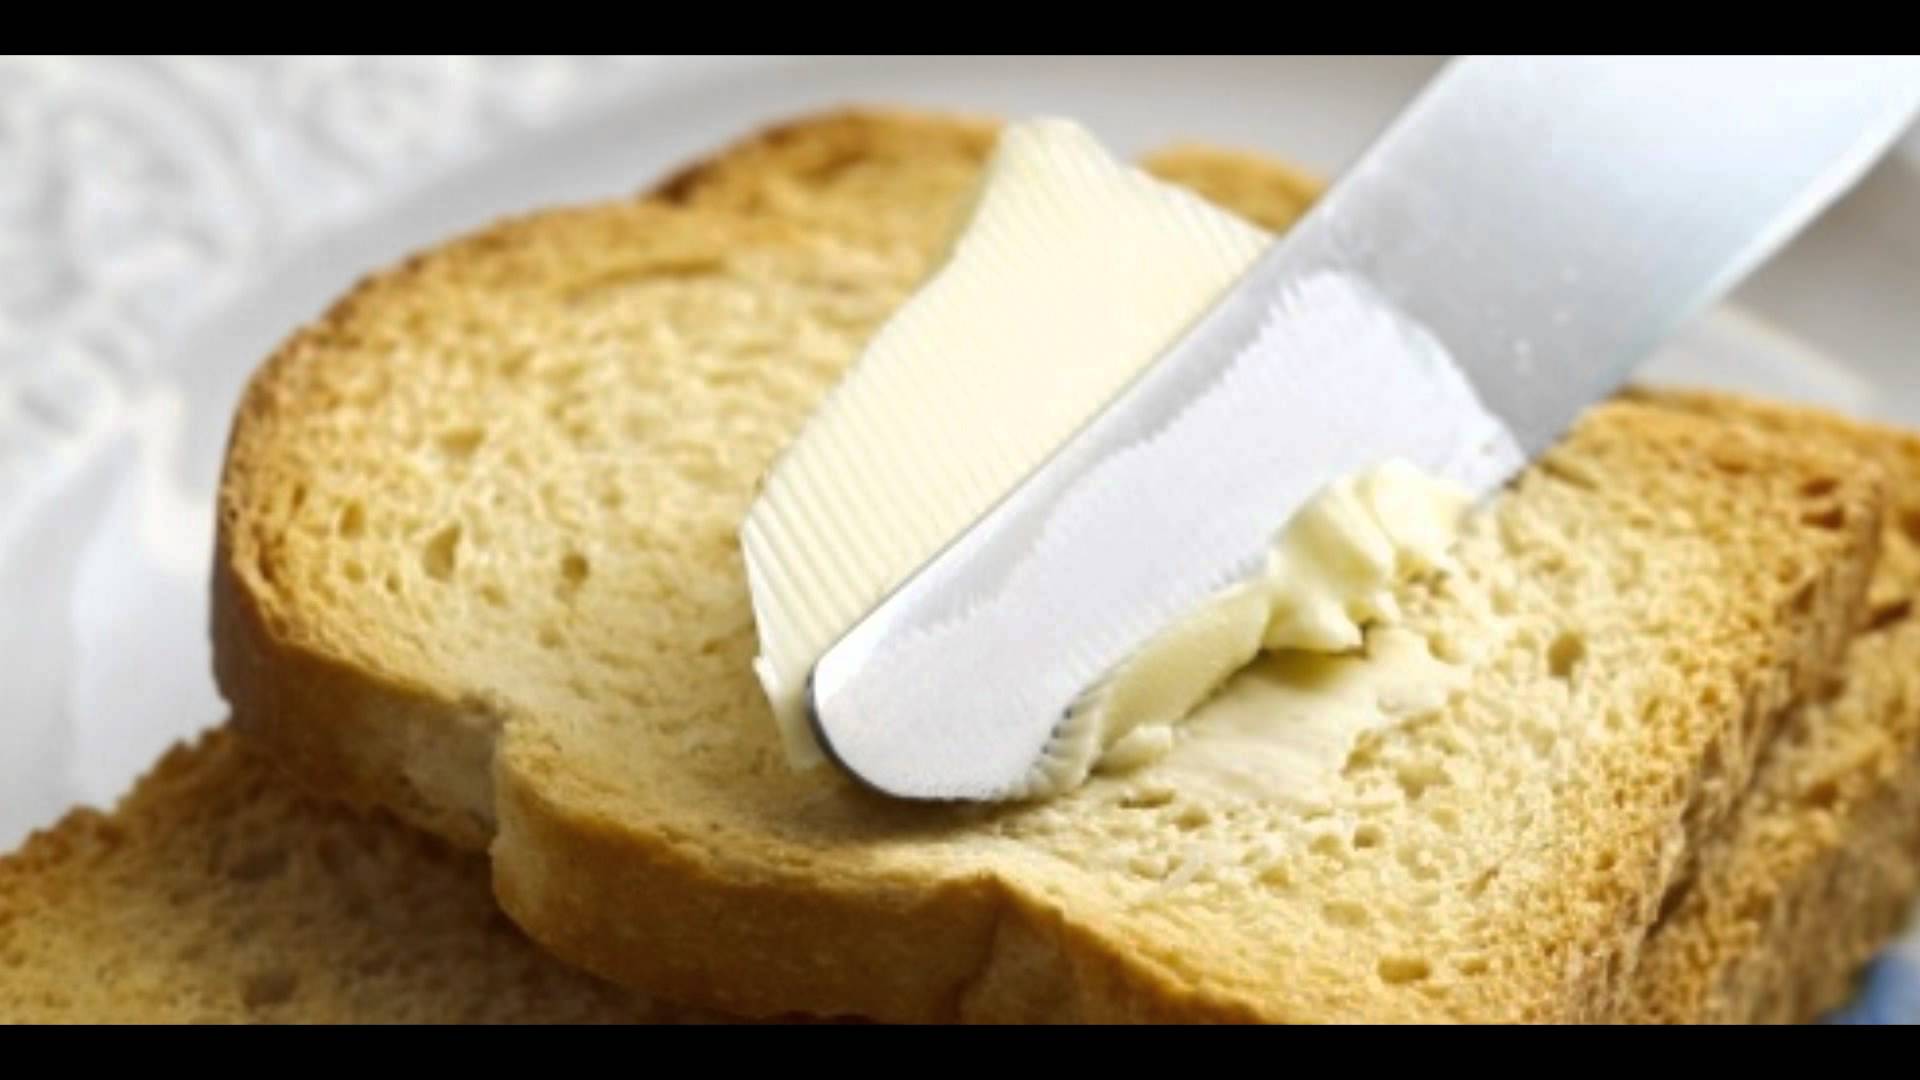 Сливочное масло девочка. Бутерброд с маслом. Хлеб с маслом. Бутерброд со сливочным маслом. Бутерброд хлеб с маслом.